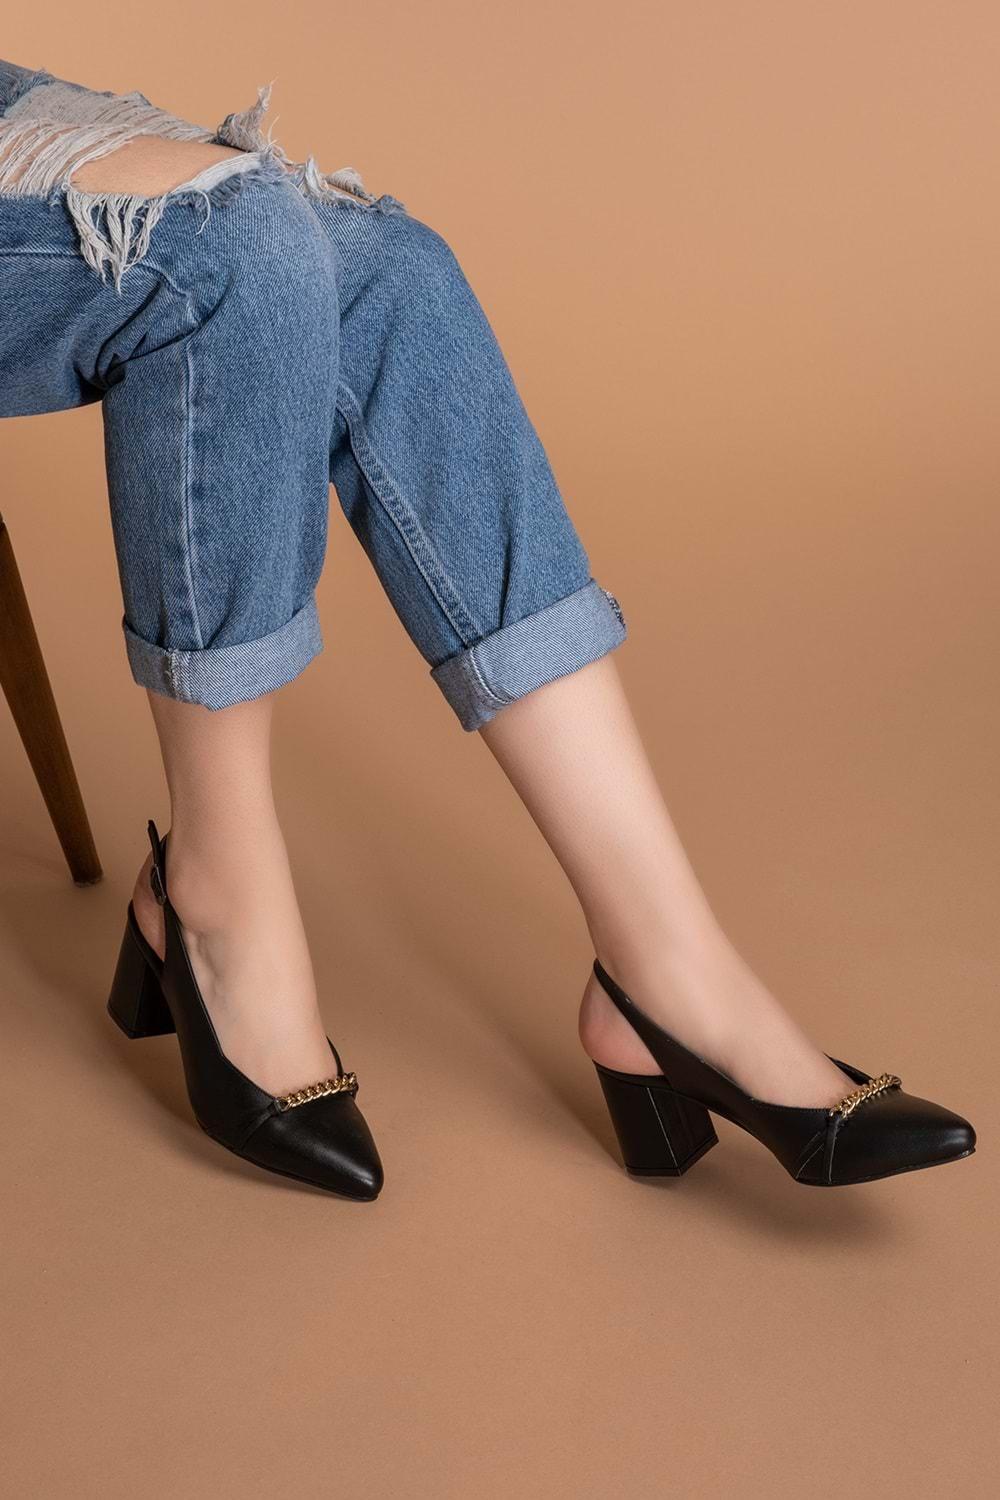 Gondol Kadın Hakiki Deri Zincir Detaylı Topuklu Ayakkabı şhn.779 - Siyah - 39